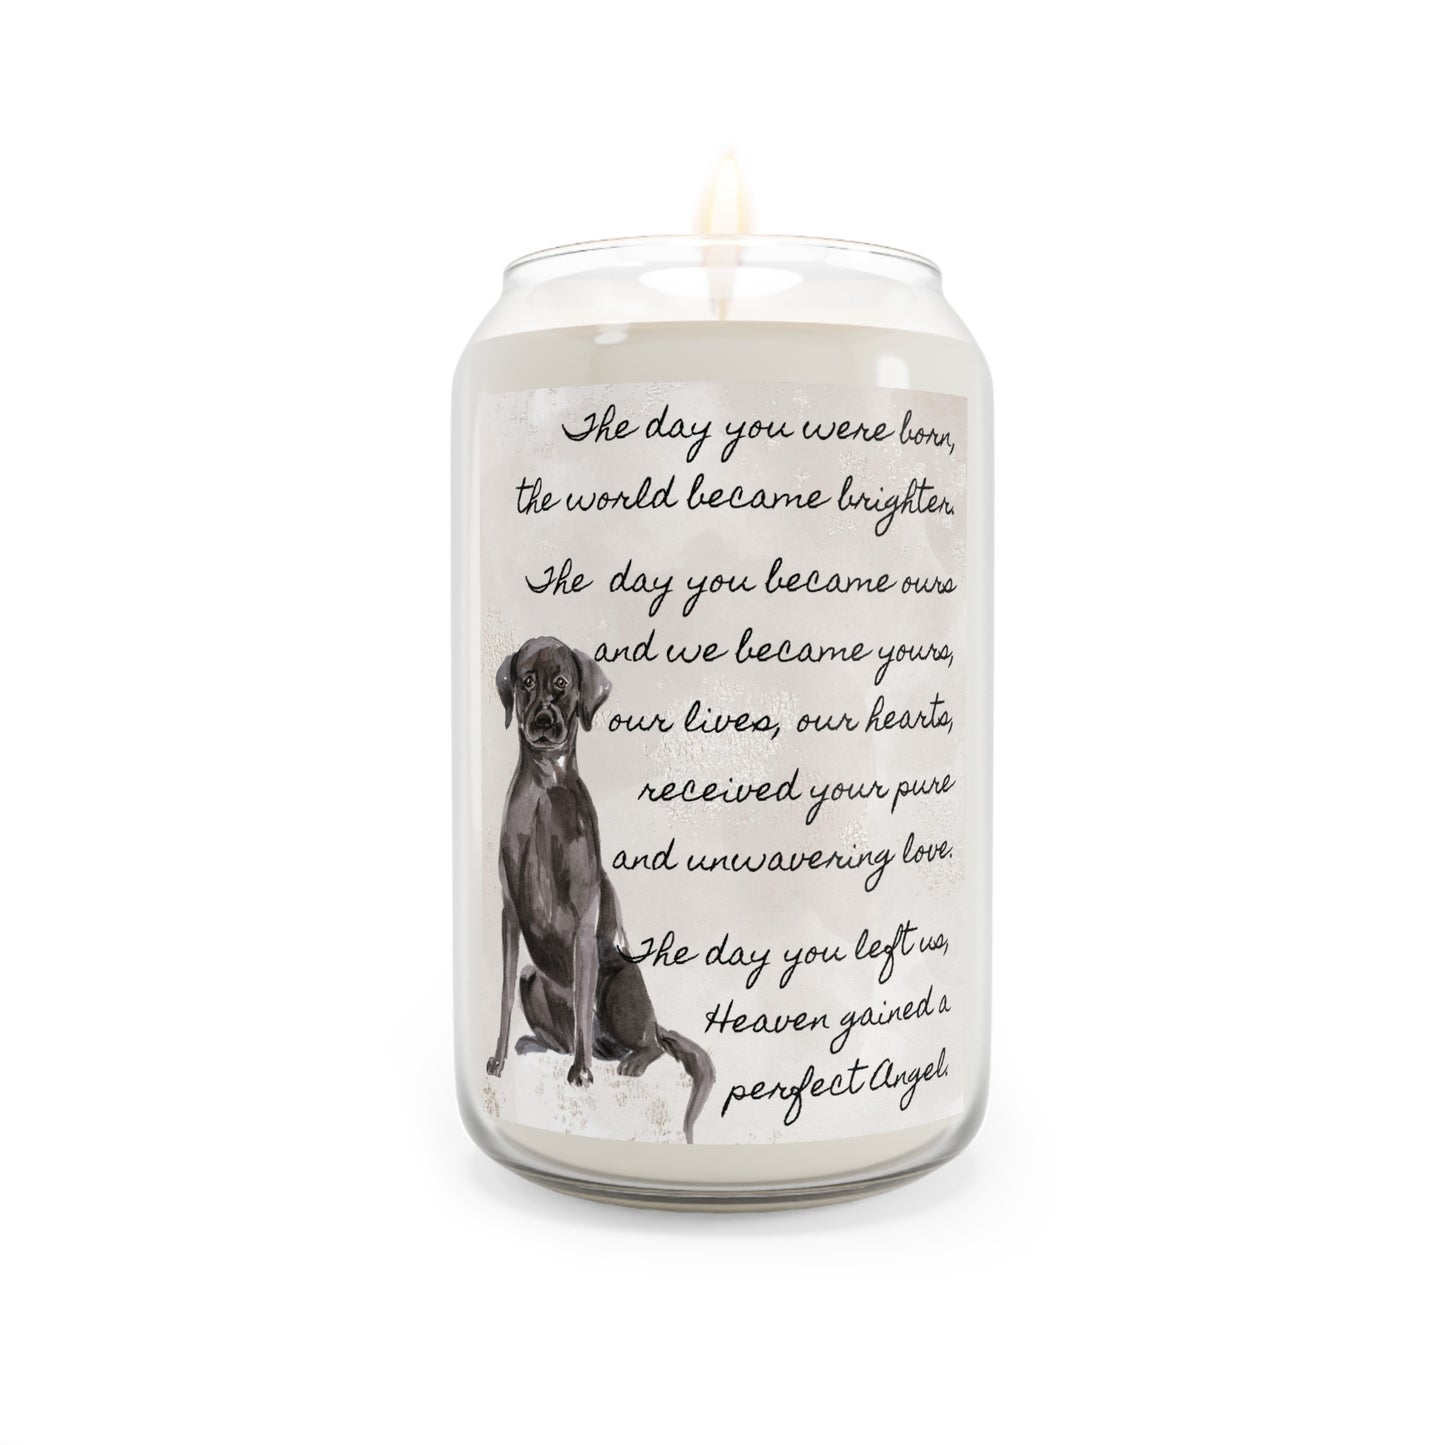 The Day - Black Labrador Retriever Pet Memorial Scented Candle